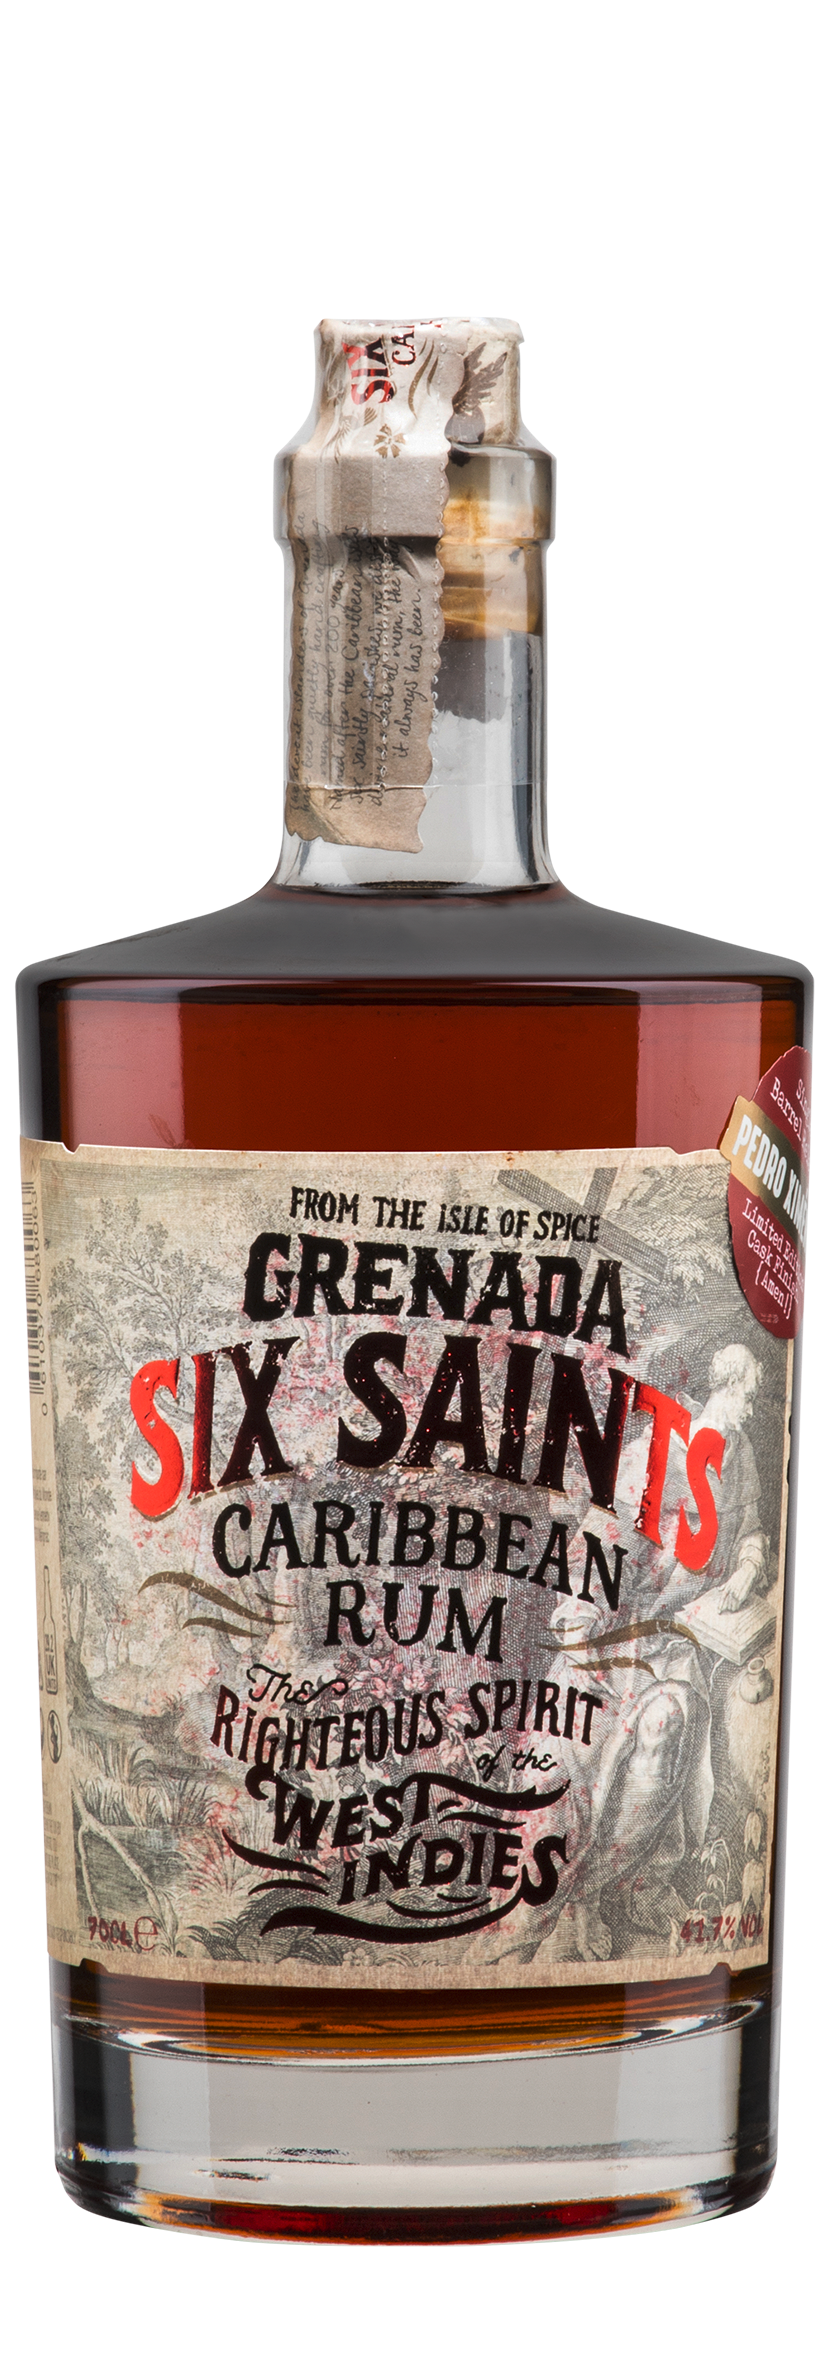 Grenada Caribbean Rum PX Cask 0